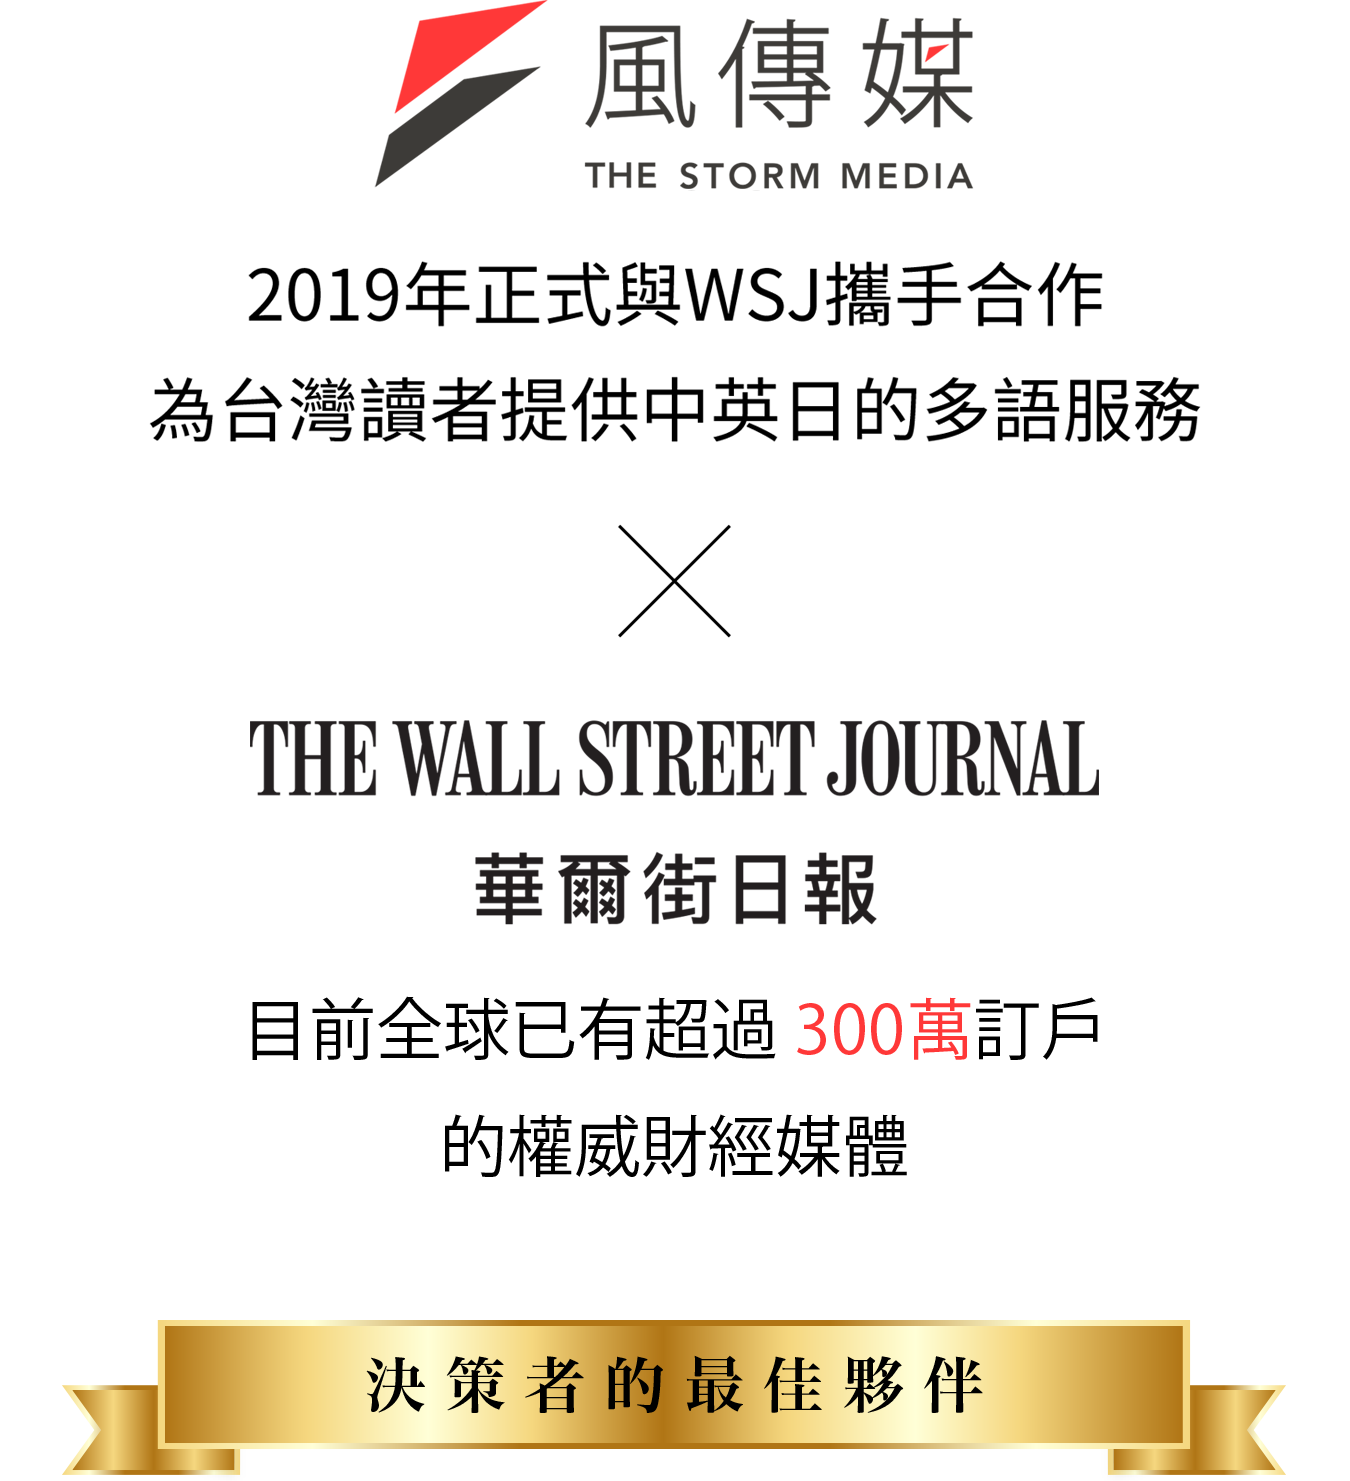 華爾街日報 The Wall Street Journal 是享譽全球的權威財經媒體，自2019年起與風傳媒合作，提供台灣讀者最專業、即時的國際新聞資訊